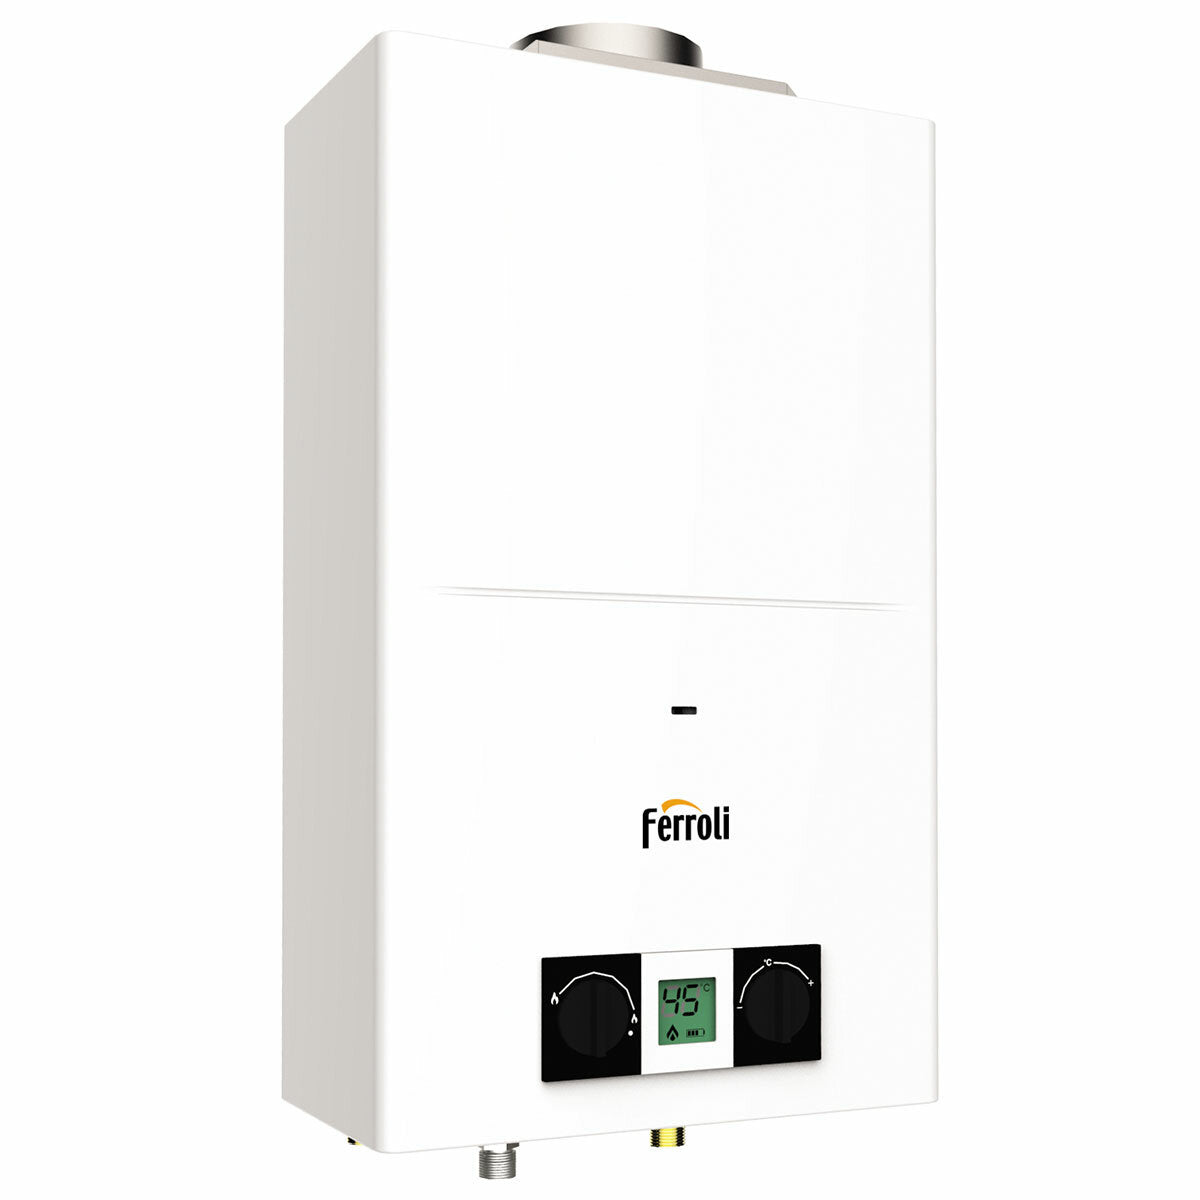 Ferroli Pegaso Eco Wand-Gas-Warmwasserbereiter mit Naturzug und offener Kammer 14 l/min. - Flüssiggas